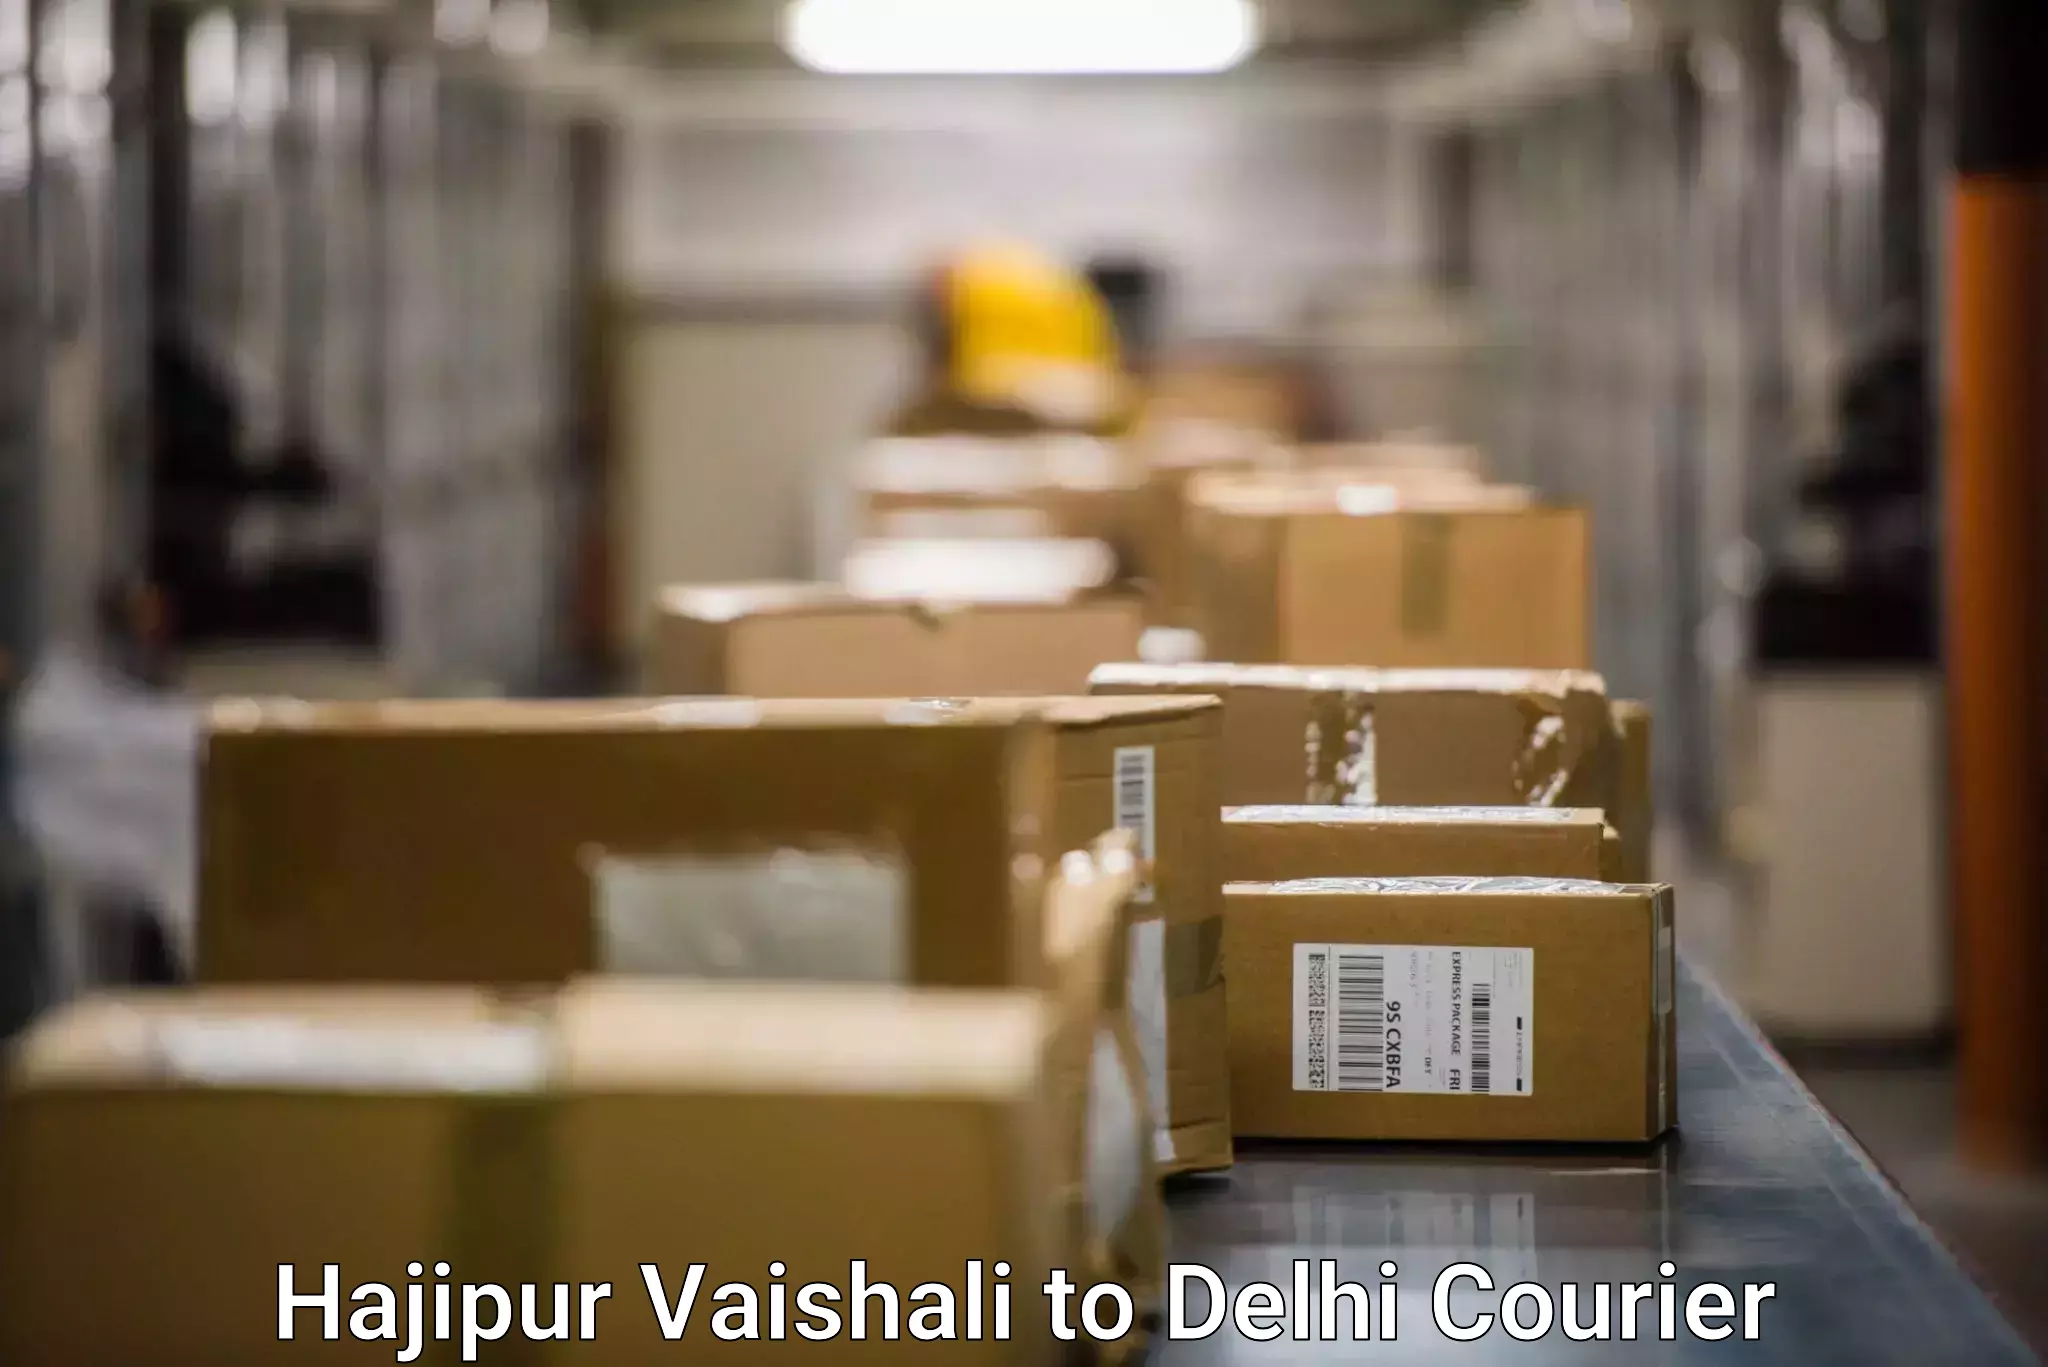 Door-to-door freight service Hajipur Vaishali to IIT Delhi